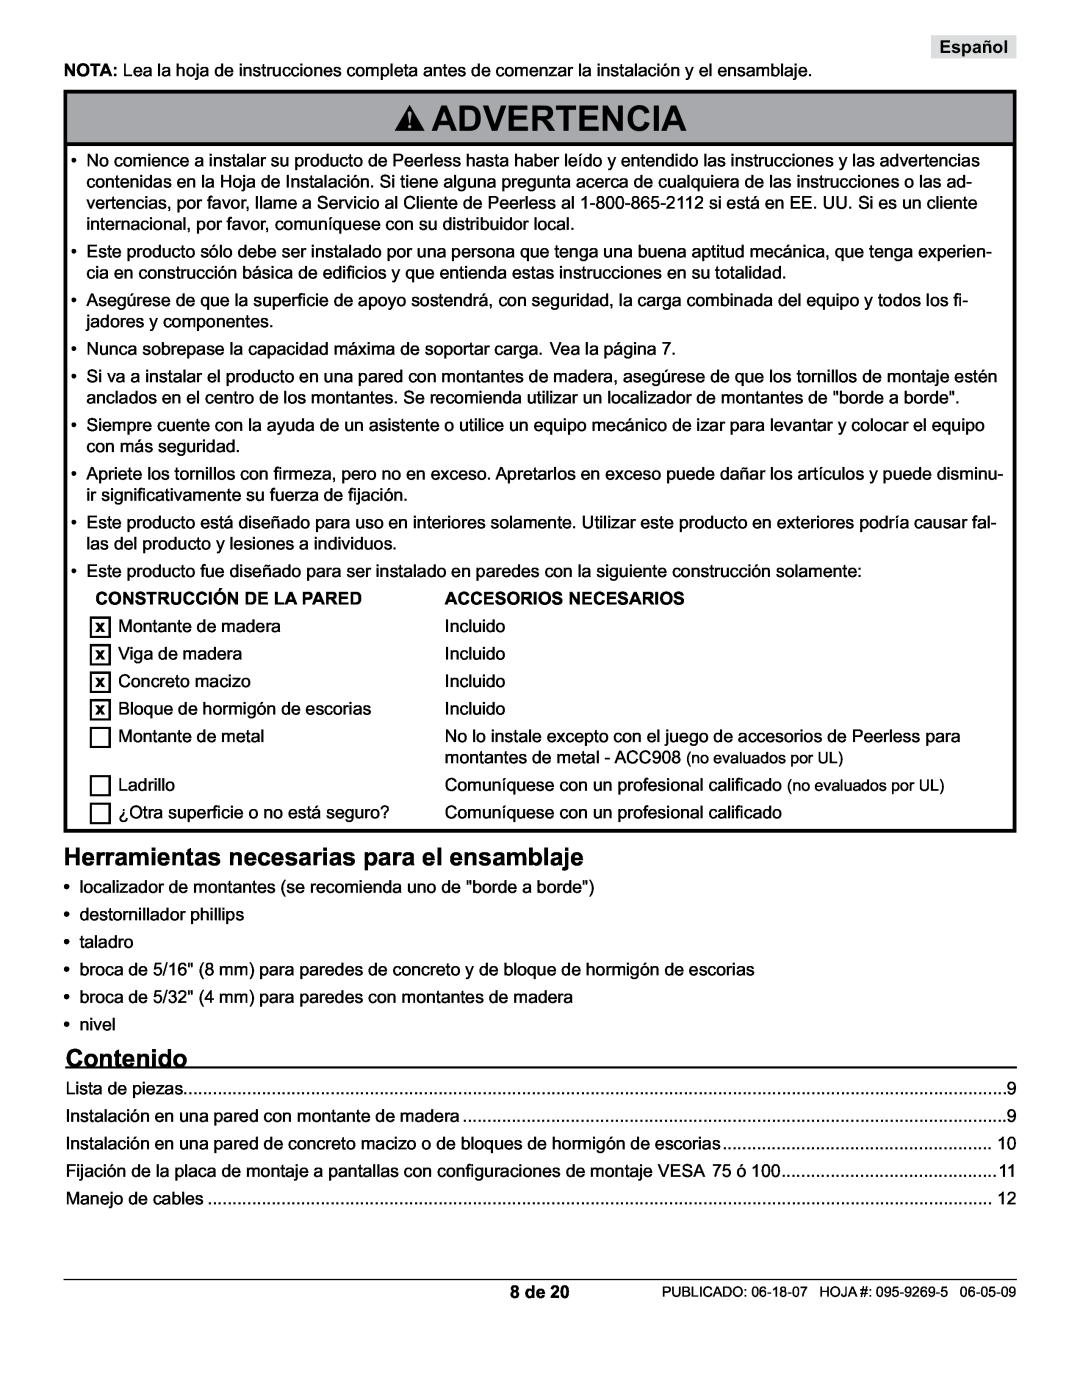 Peerless Industries PA730-S manual Advertencia, Herramientas necesarias para el ensamblaje, Contenido, Español, 8 de 